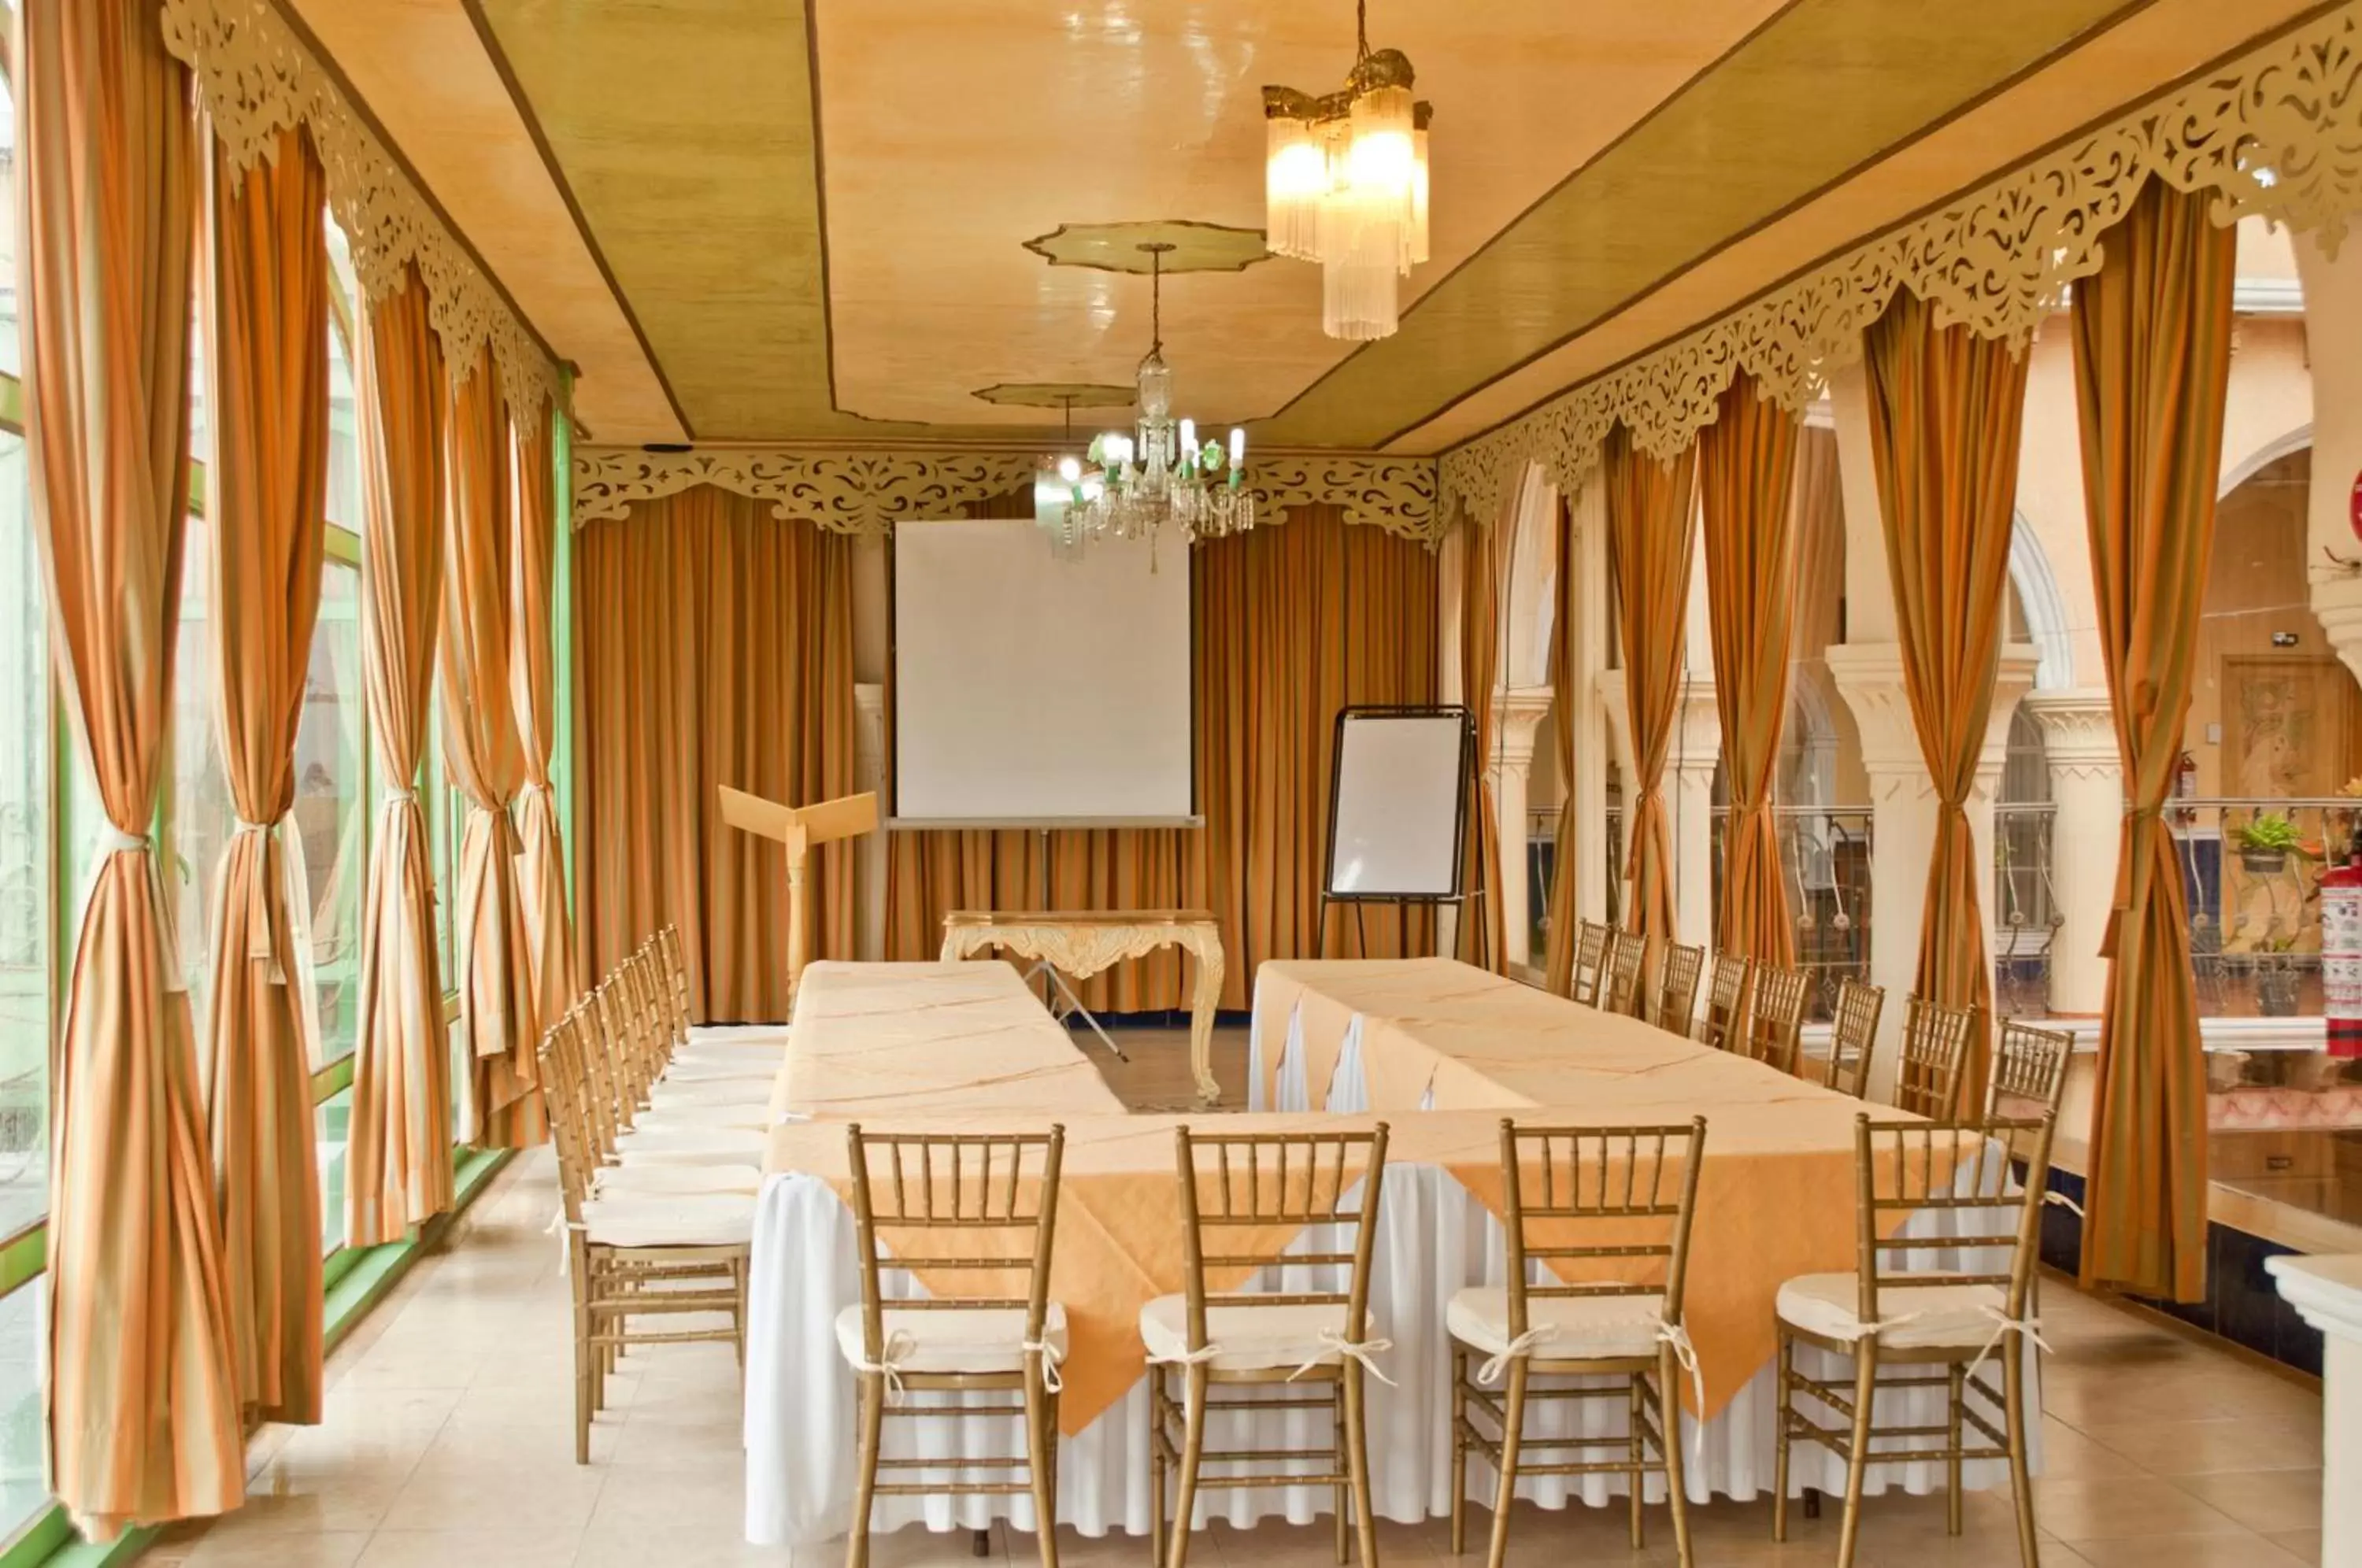 Banquet/Function facilities in Centro Hotel Villa las Margaritas